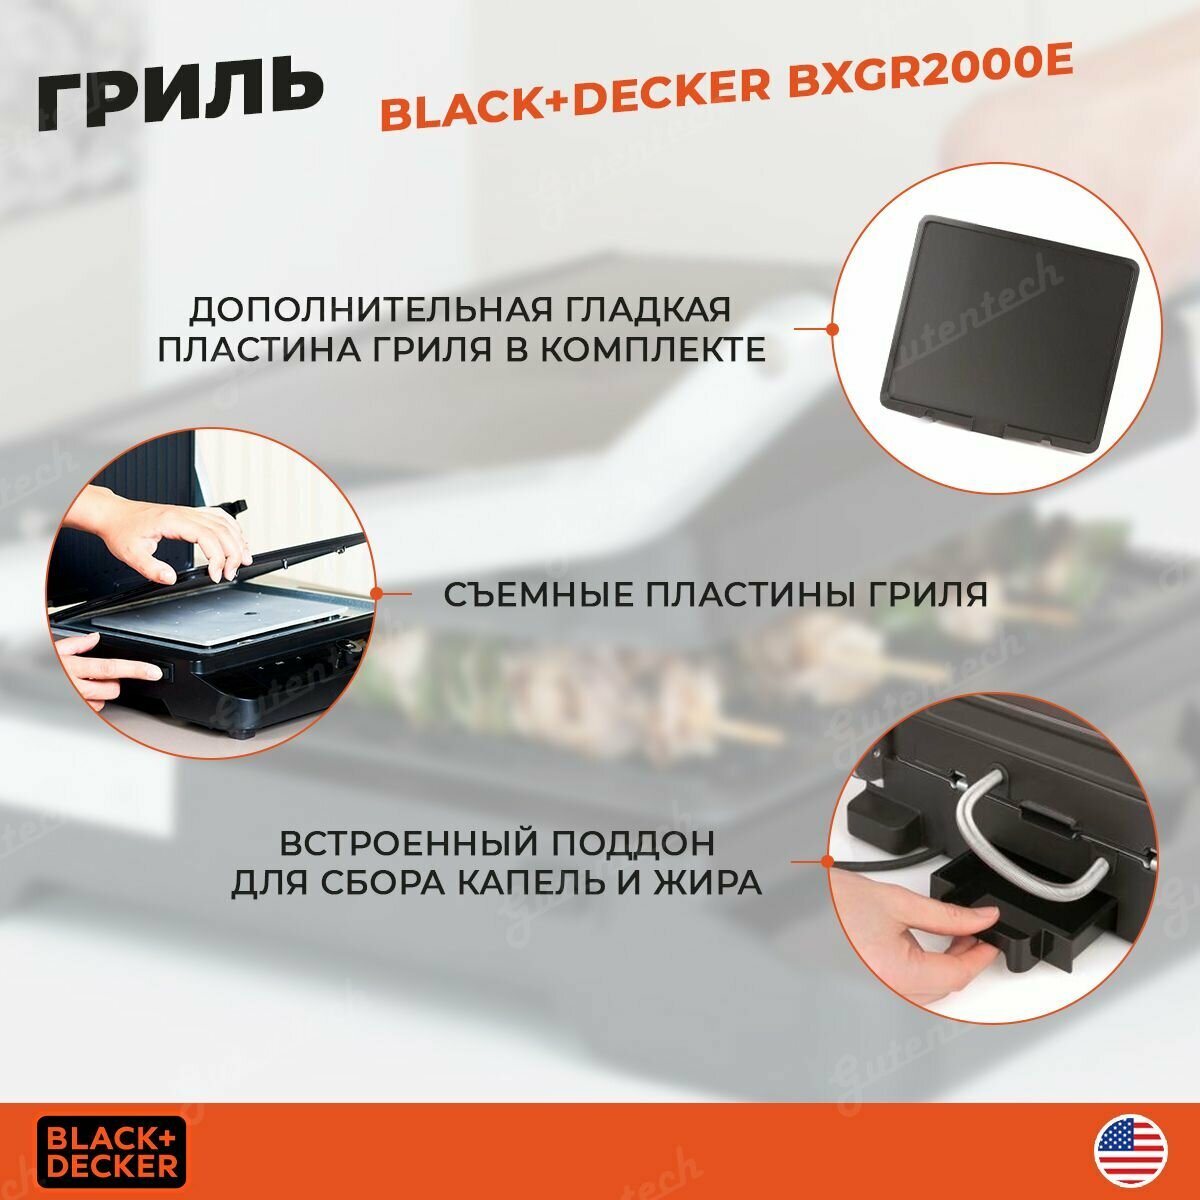 Электрогриль Black+Decker - фото №8